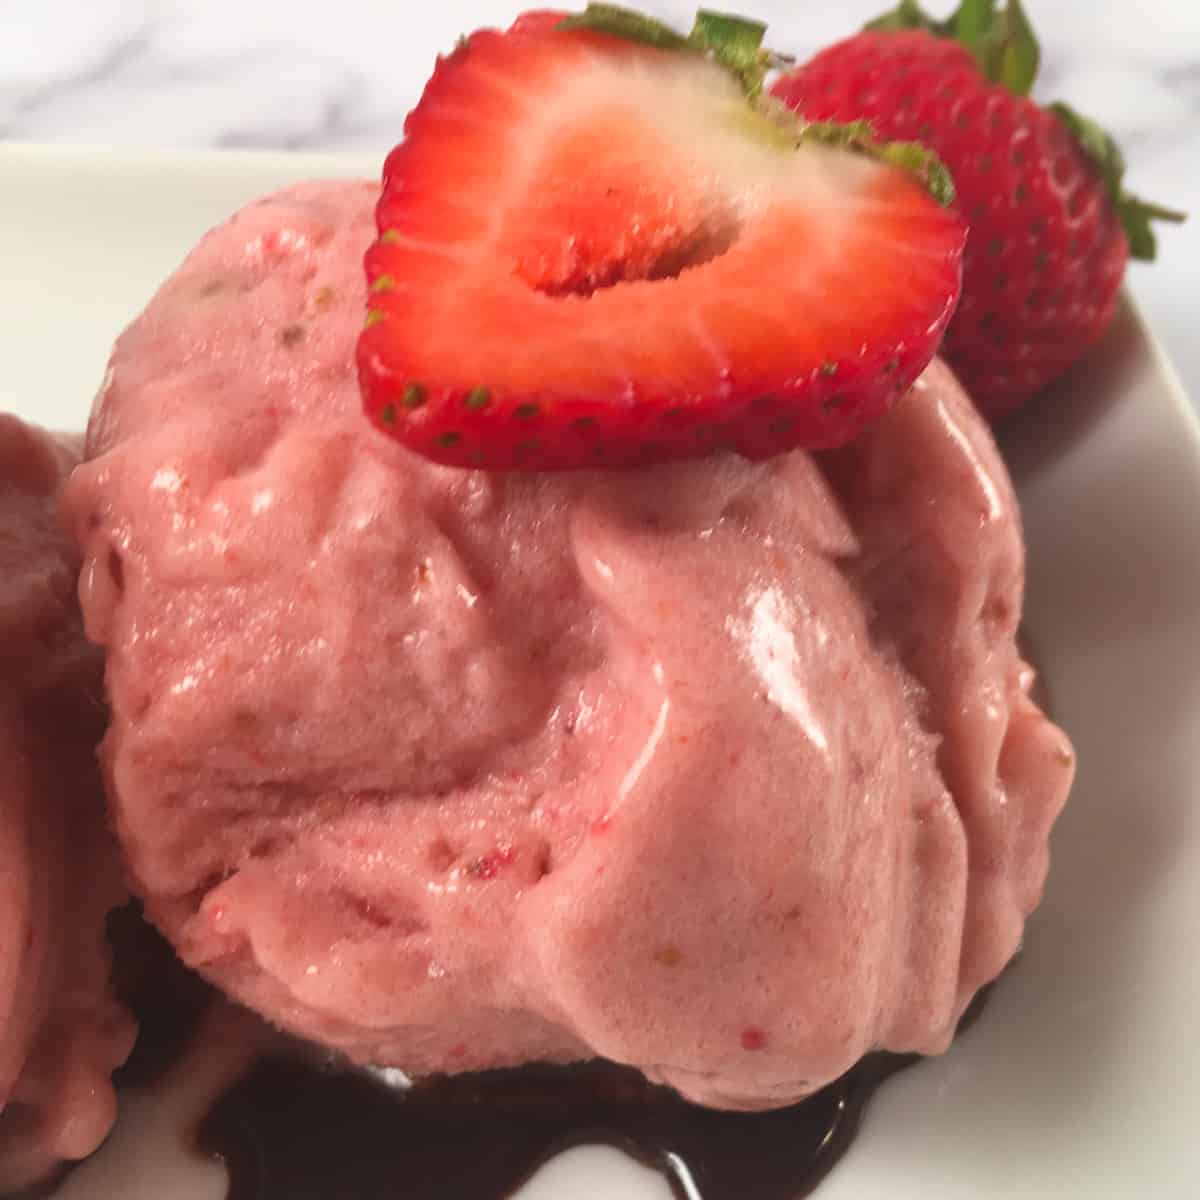 strawberry nice cream scoop